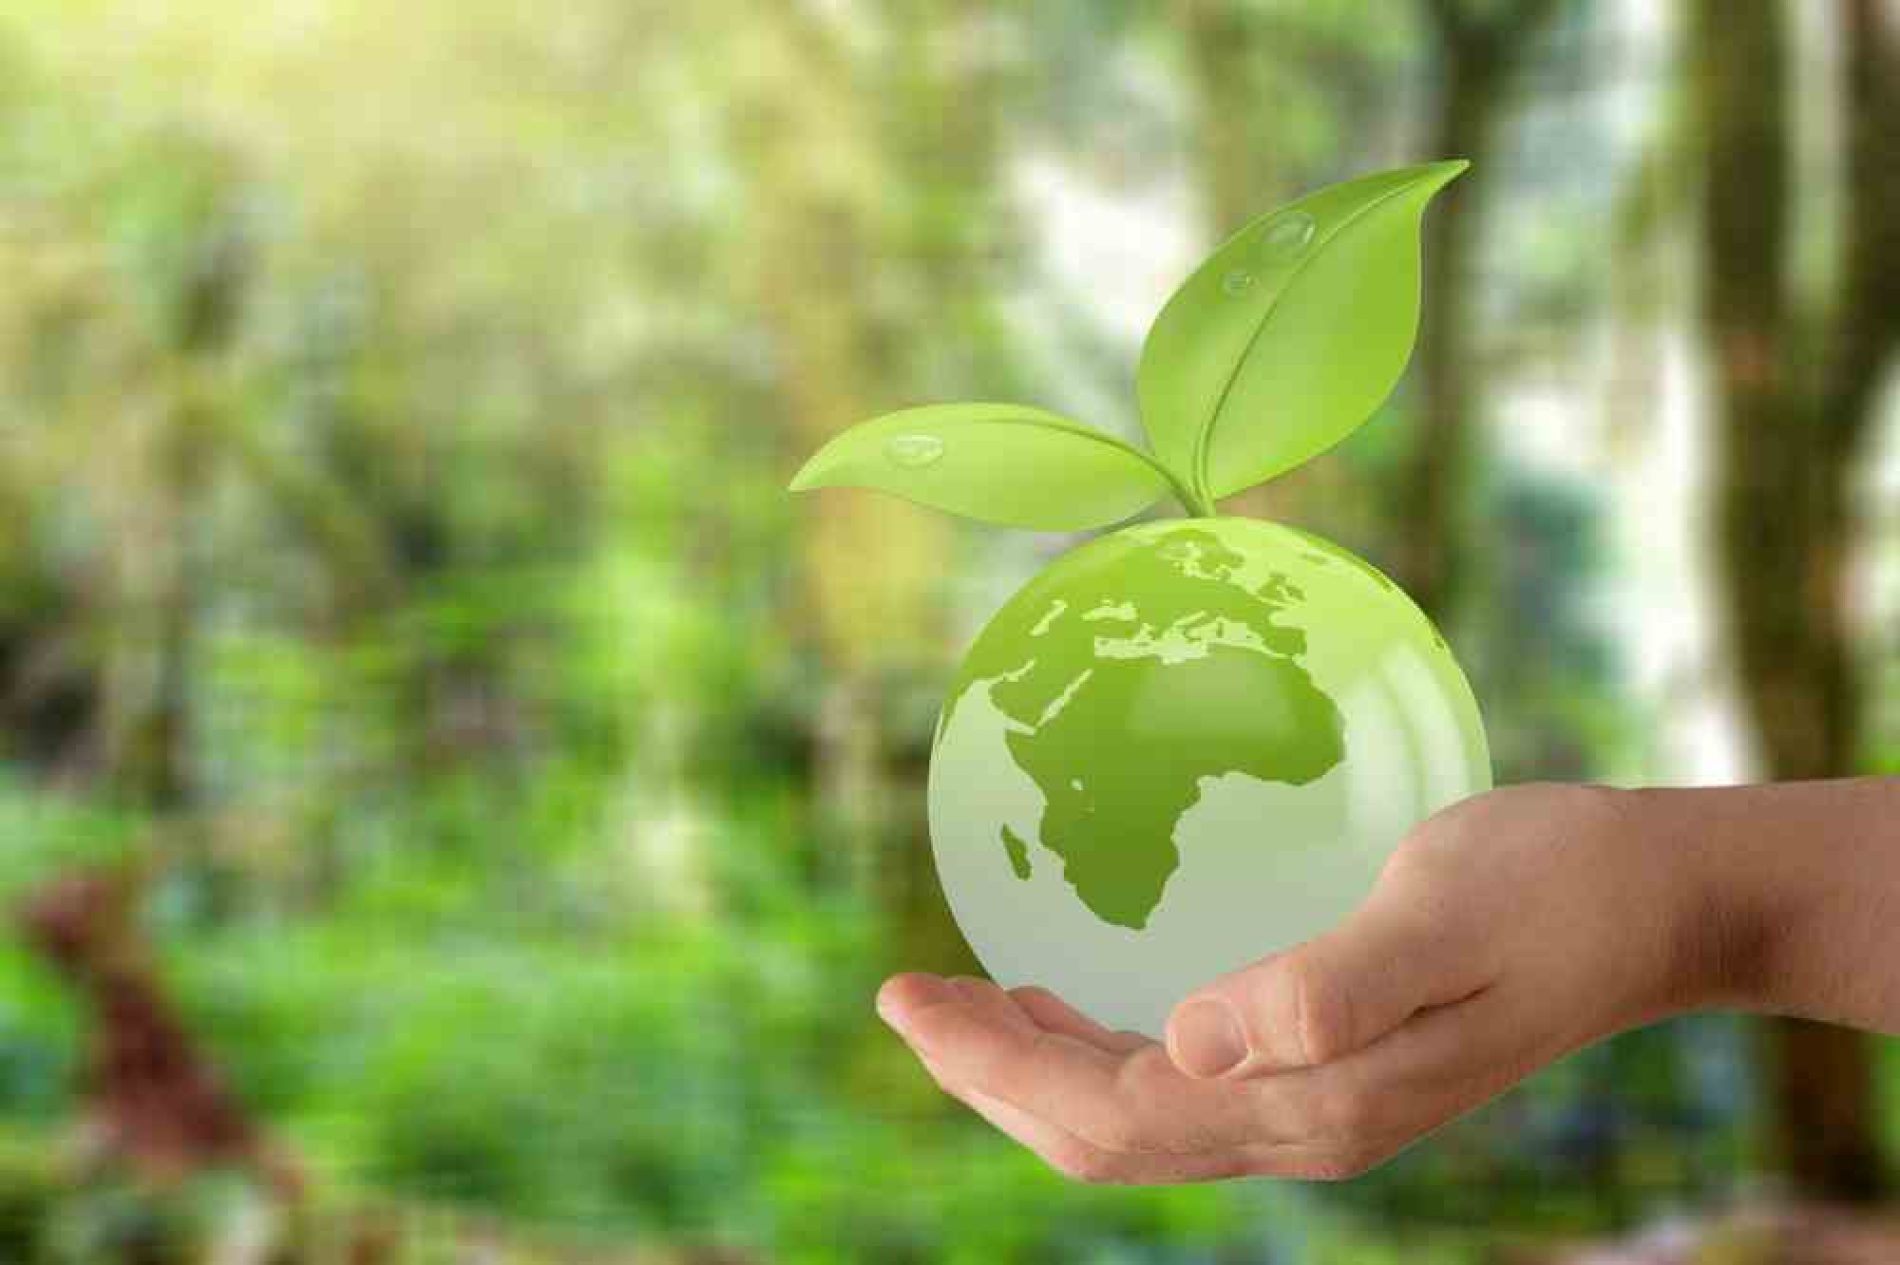 Herbalife tiene un compromiso con el cuidado del planeta